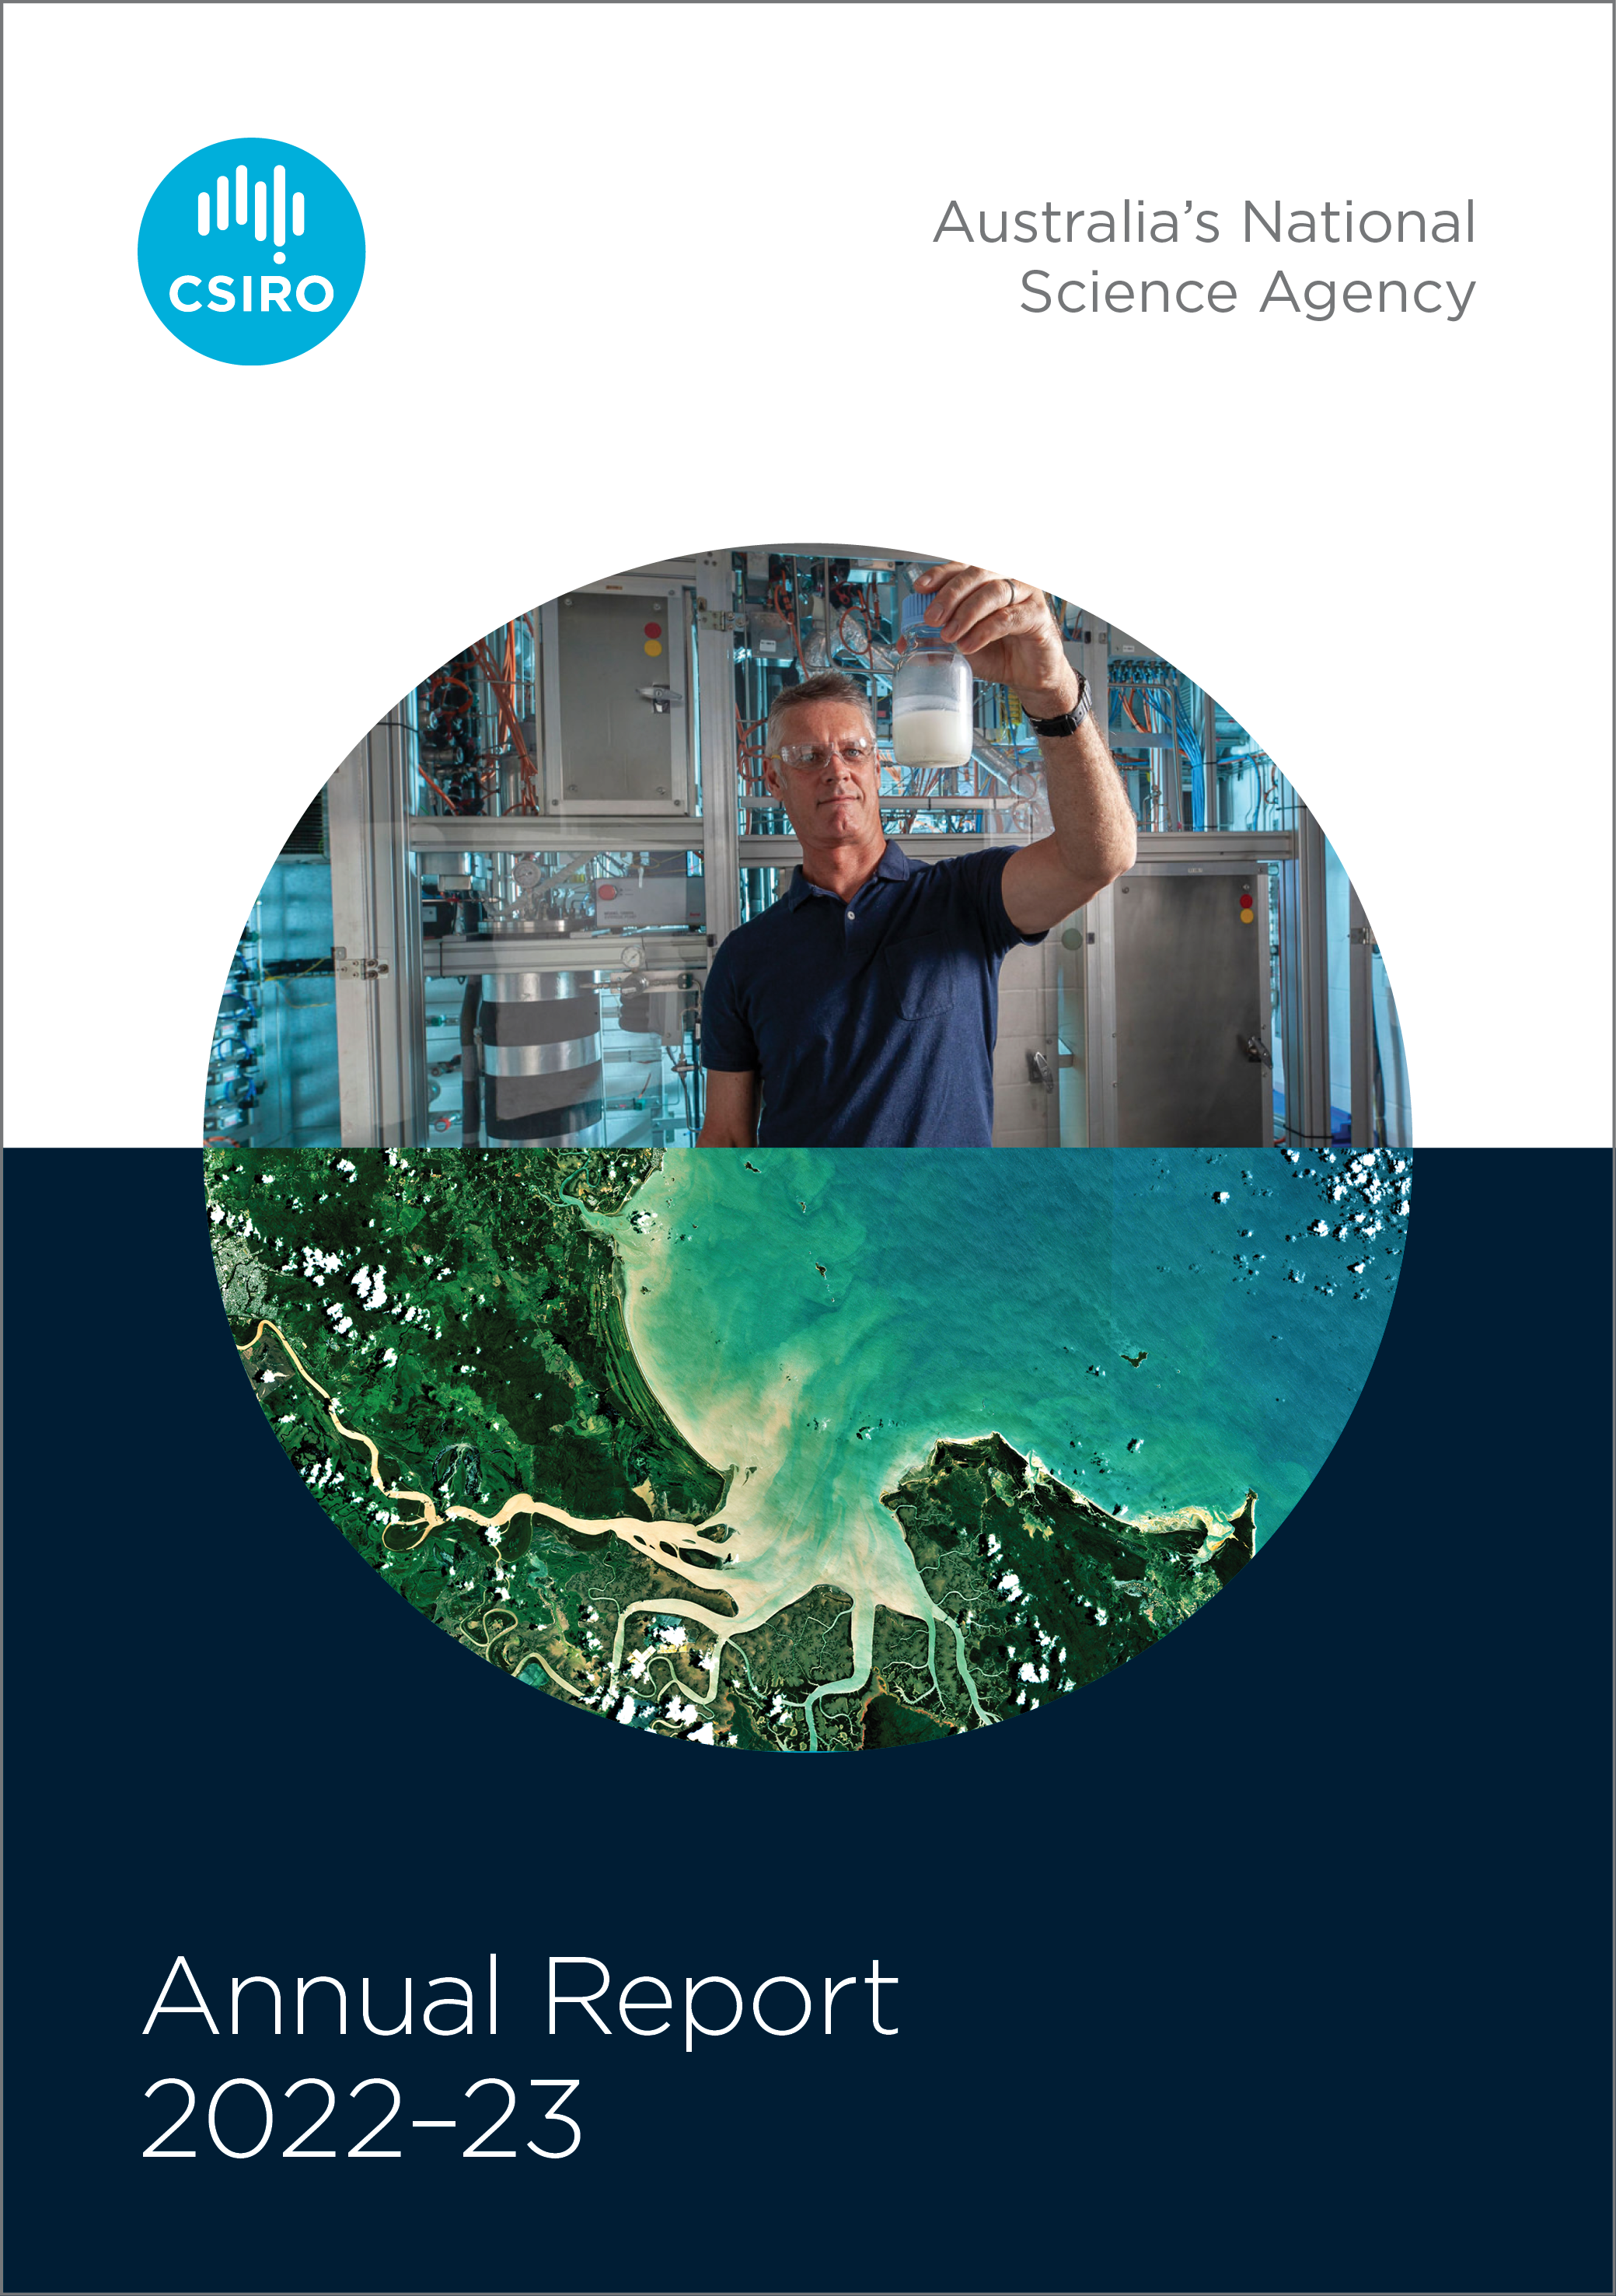 CSIRO annual report cover